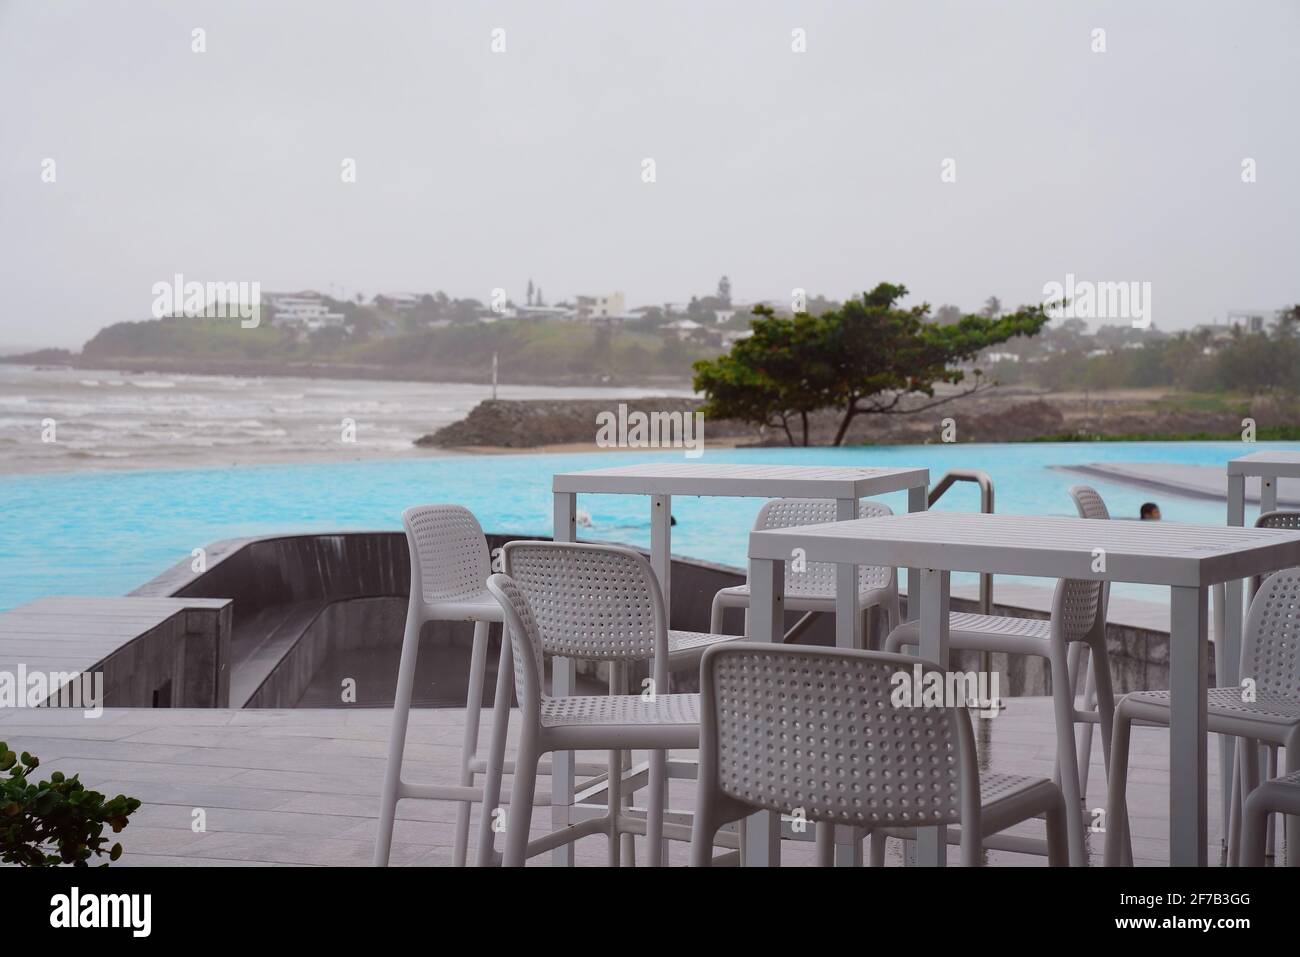 Cafeterische und Stühle neben einem randlosen Pool am ozean an einem nassen und windigen grauen bewölkten Tag Stockfoto